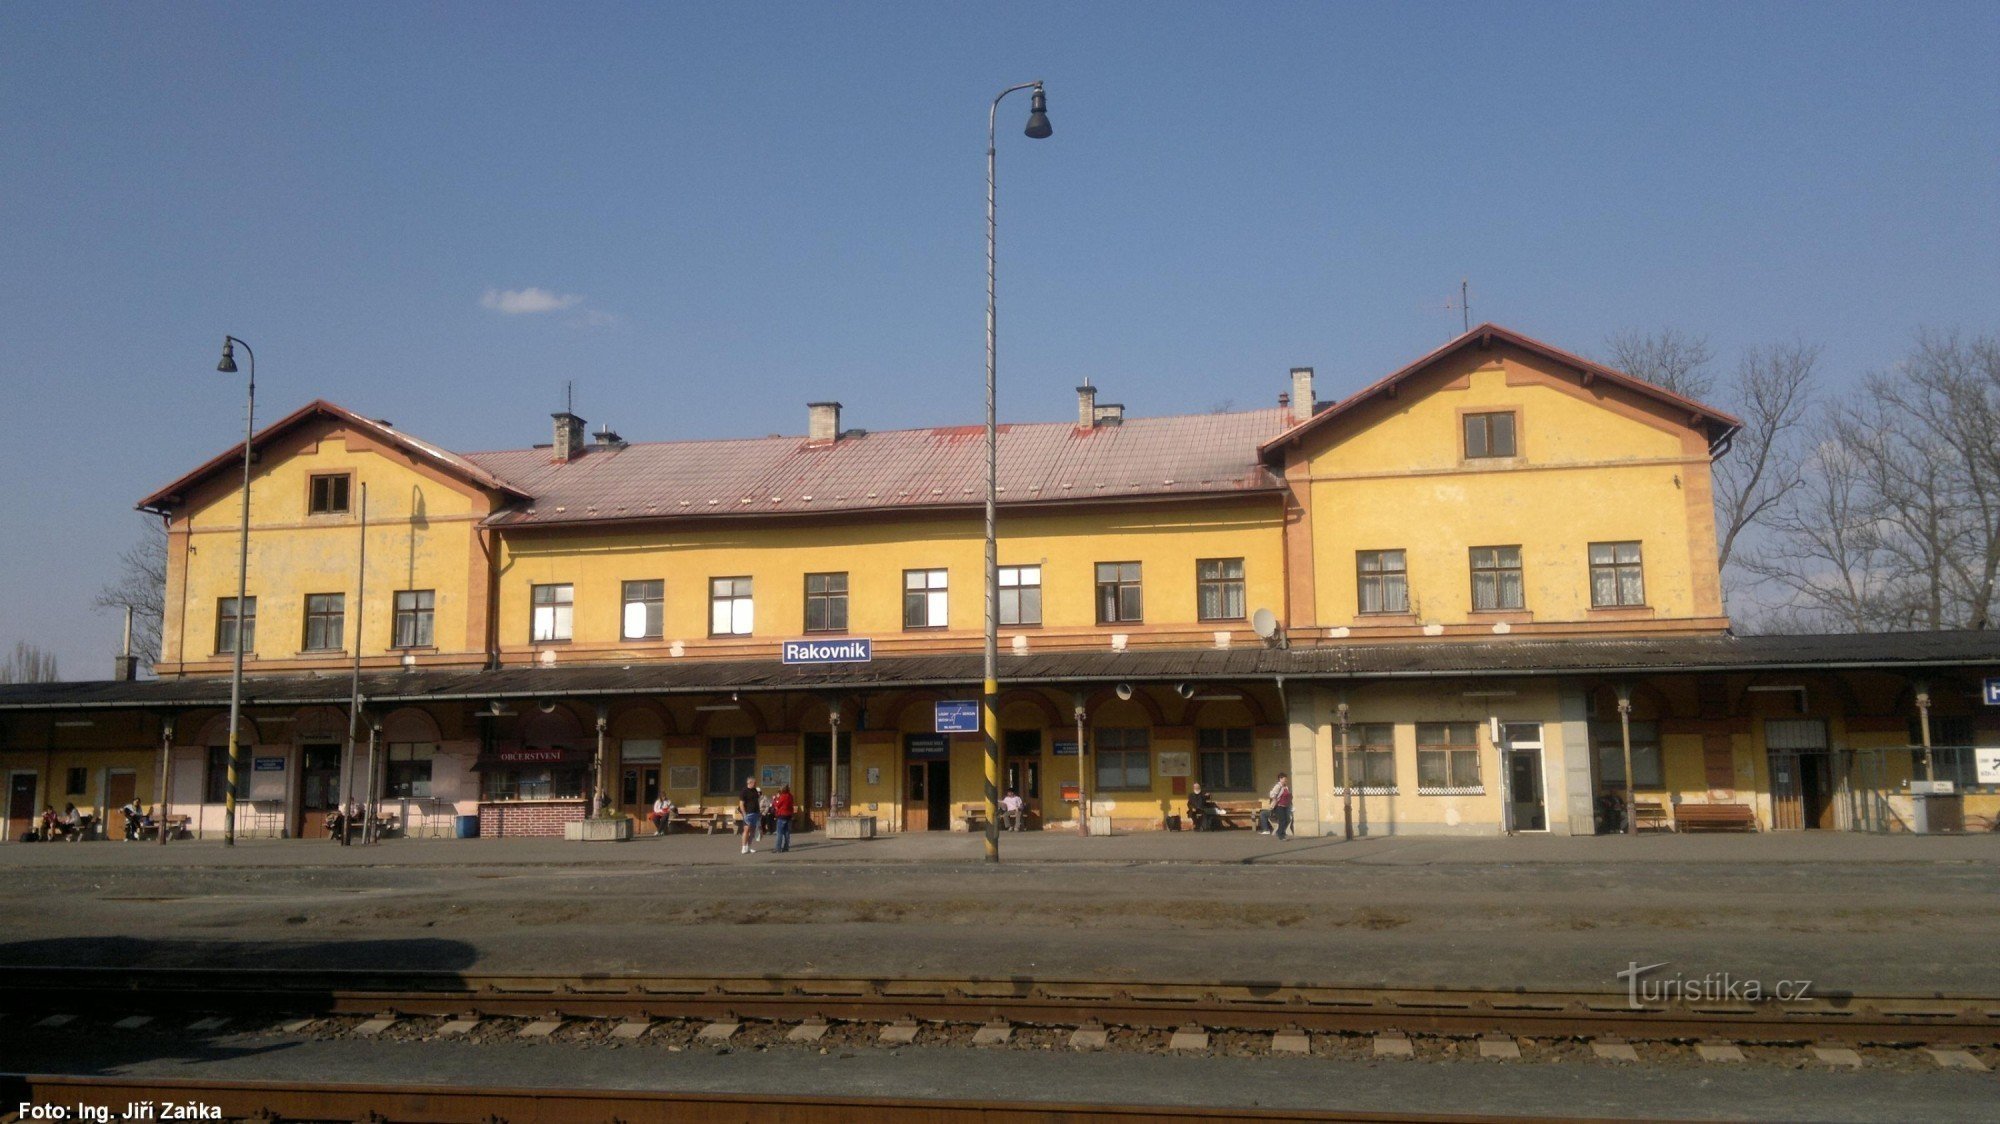 Stazione ferroviaria di Rakovnik